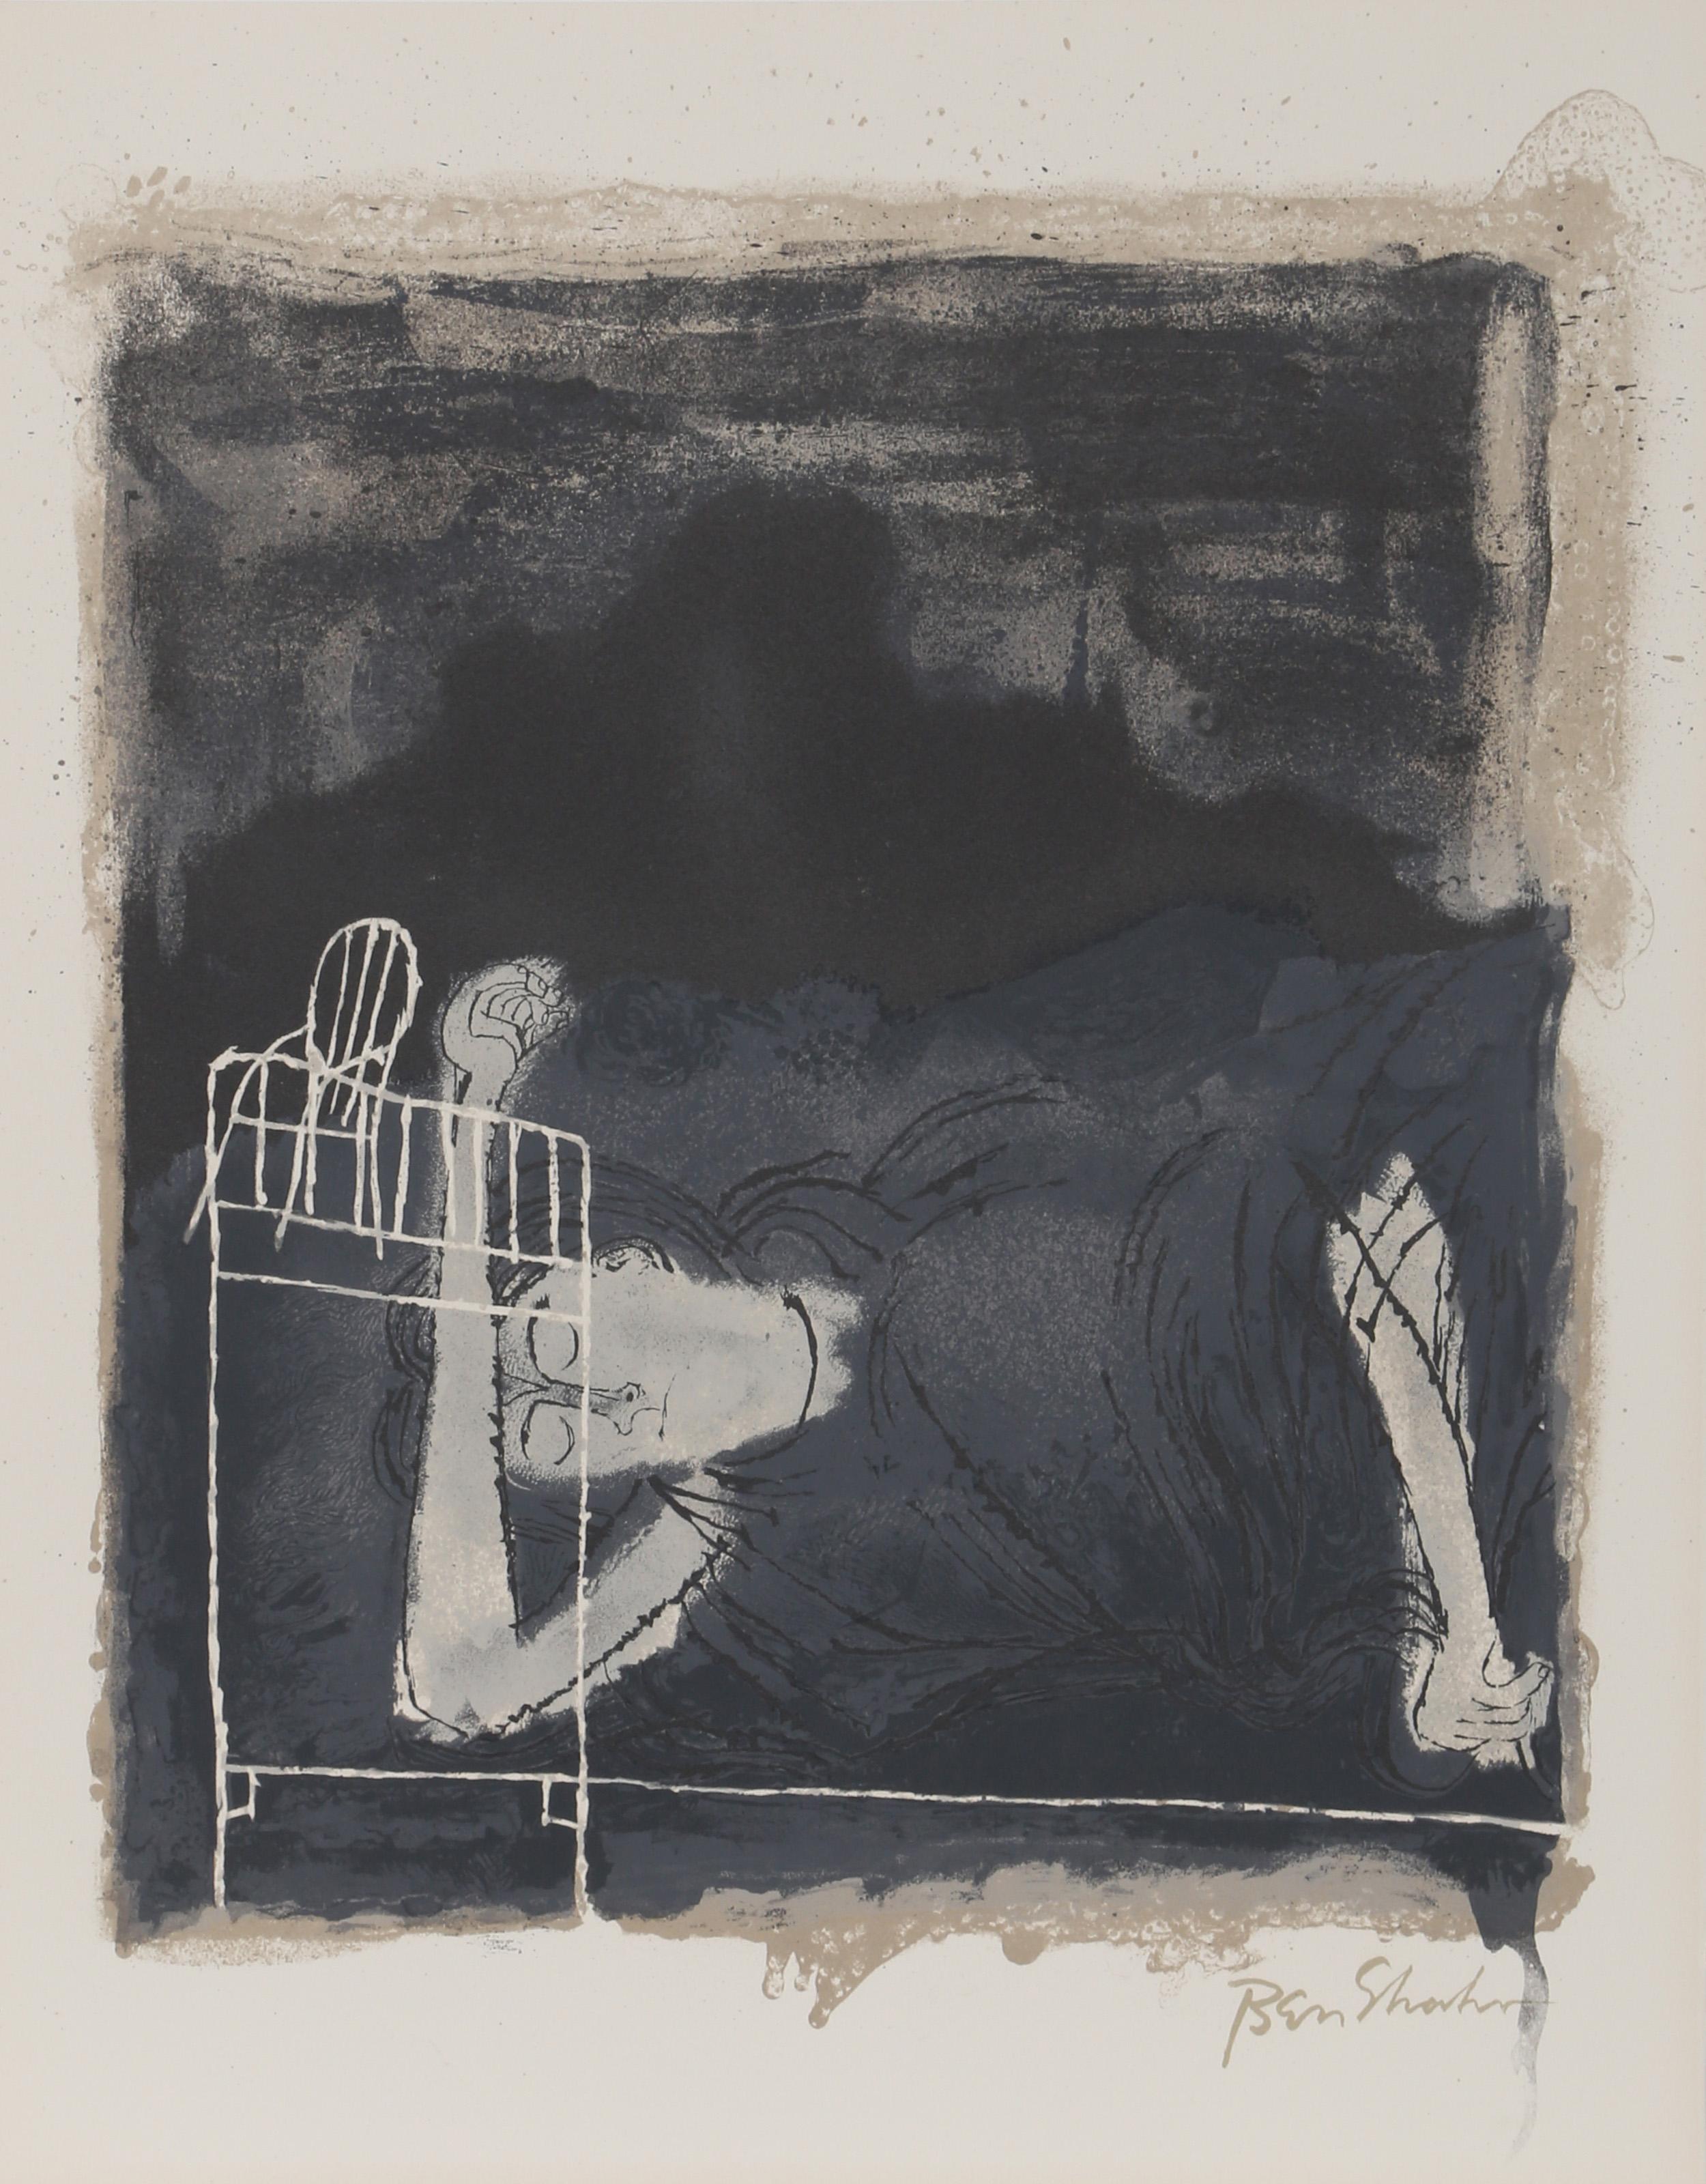 Artistics : Ben Shahn, Américain (1898 - 1969)
Titre : Les cris des femmes en travail du portfolio de Rilke
Année : 1968
Moyen d'expression : Lithographie sur Arches, signée dans la plaque
Edition : 750
Taille : 22.5 x 17.75 in. (57.15 x 45.09